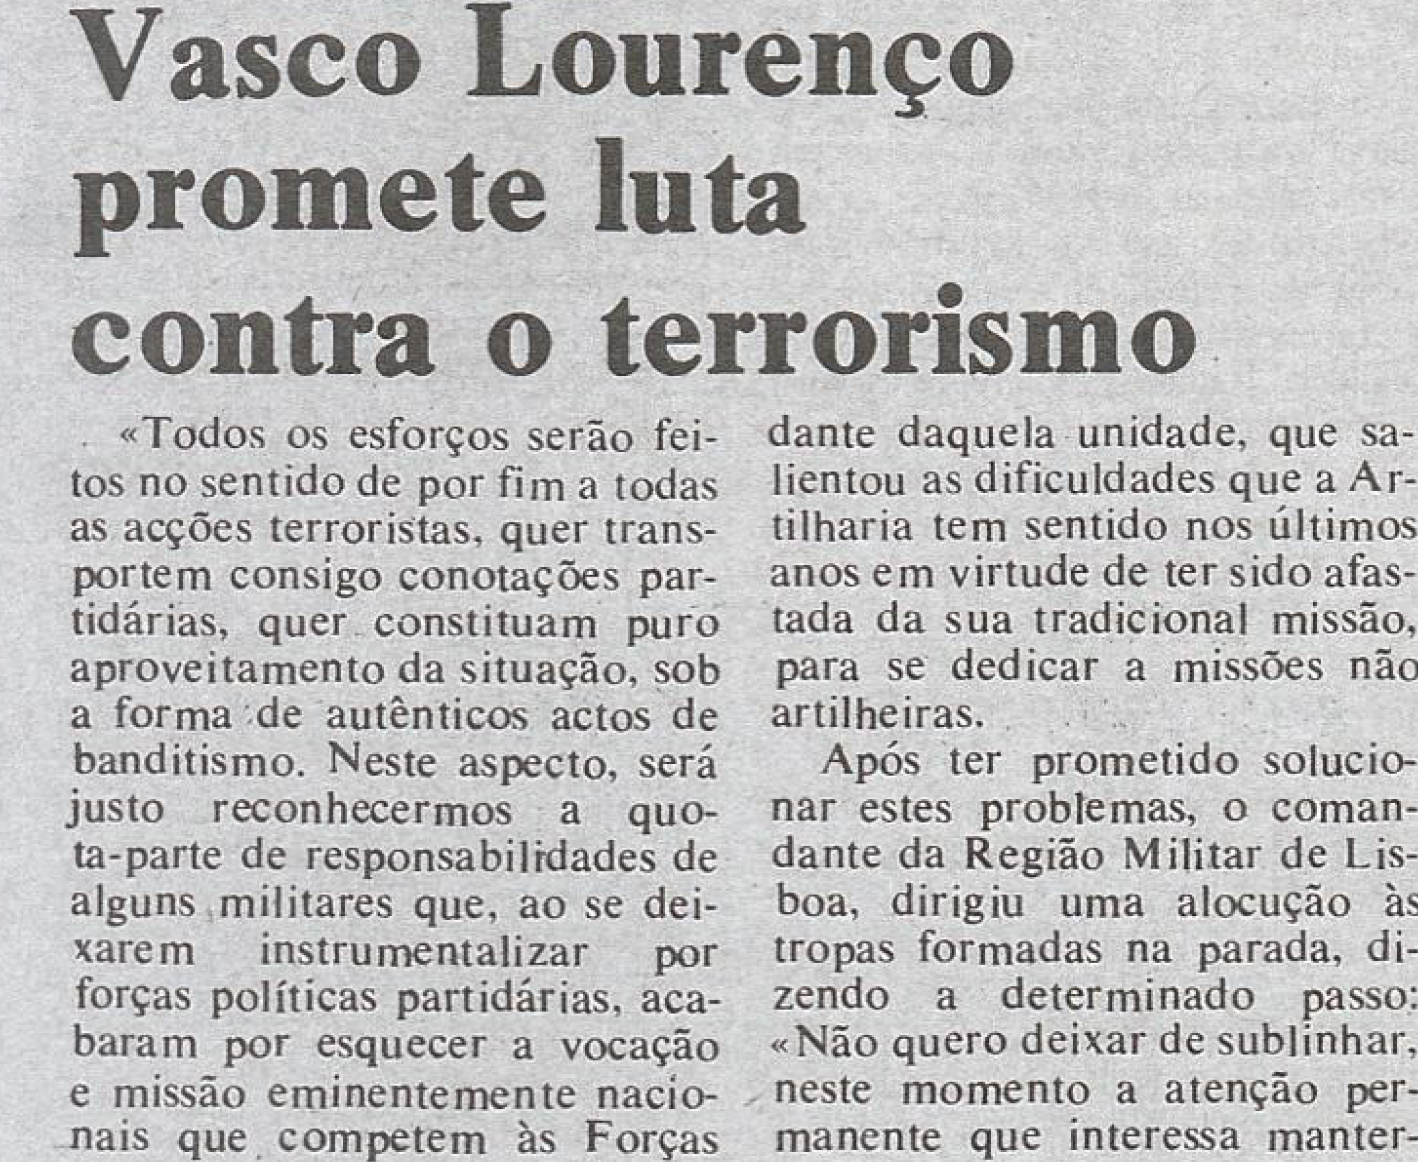 "Vasco Lourenço promete luta contra o terrorismo"